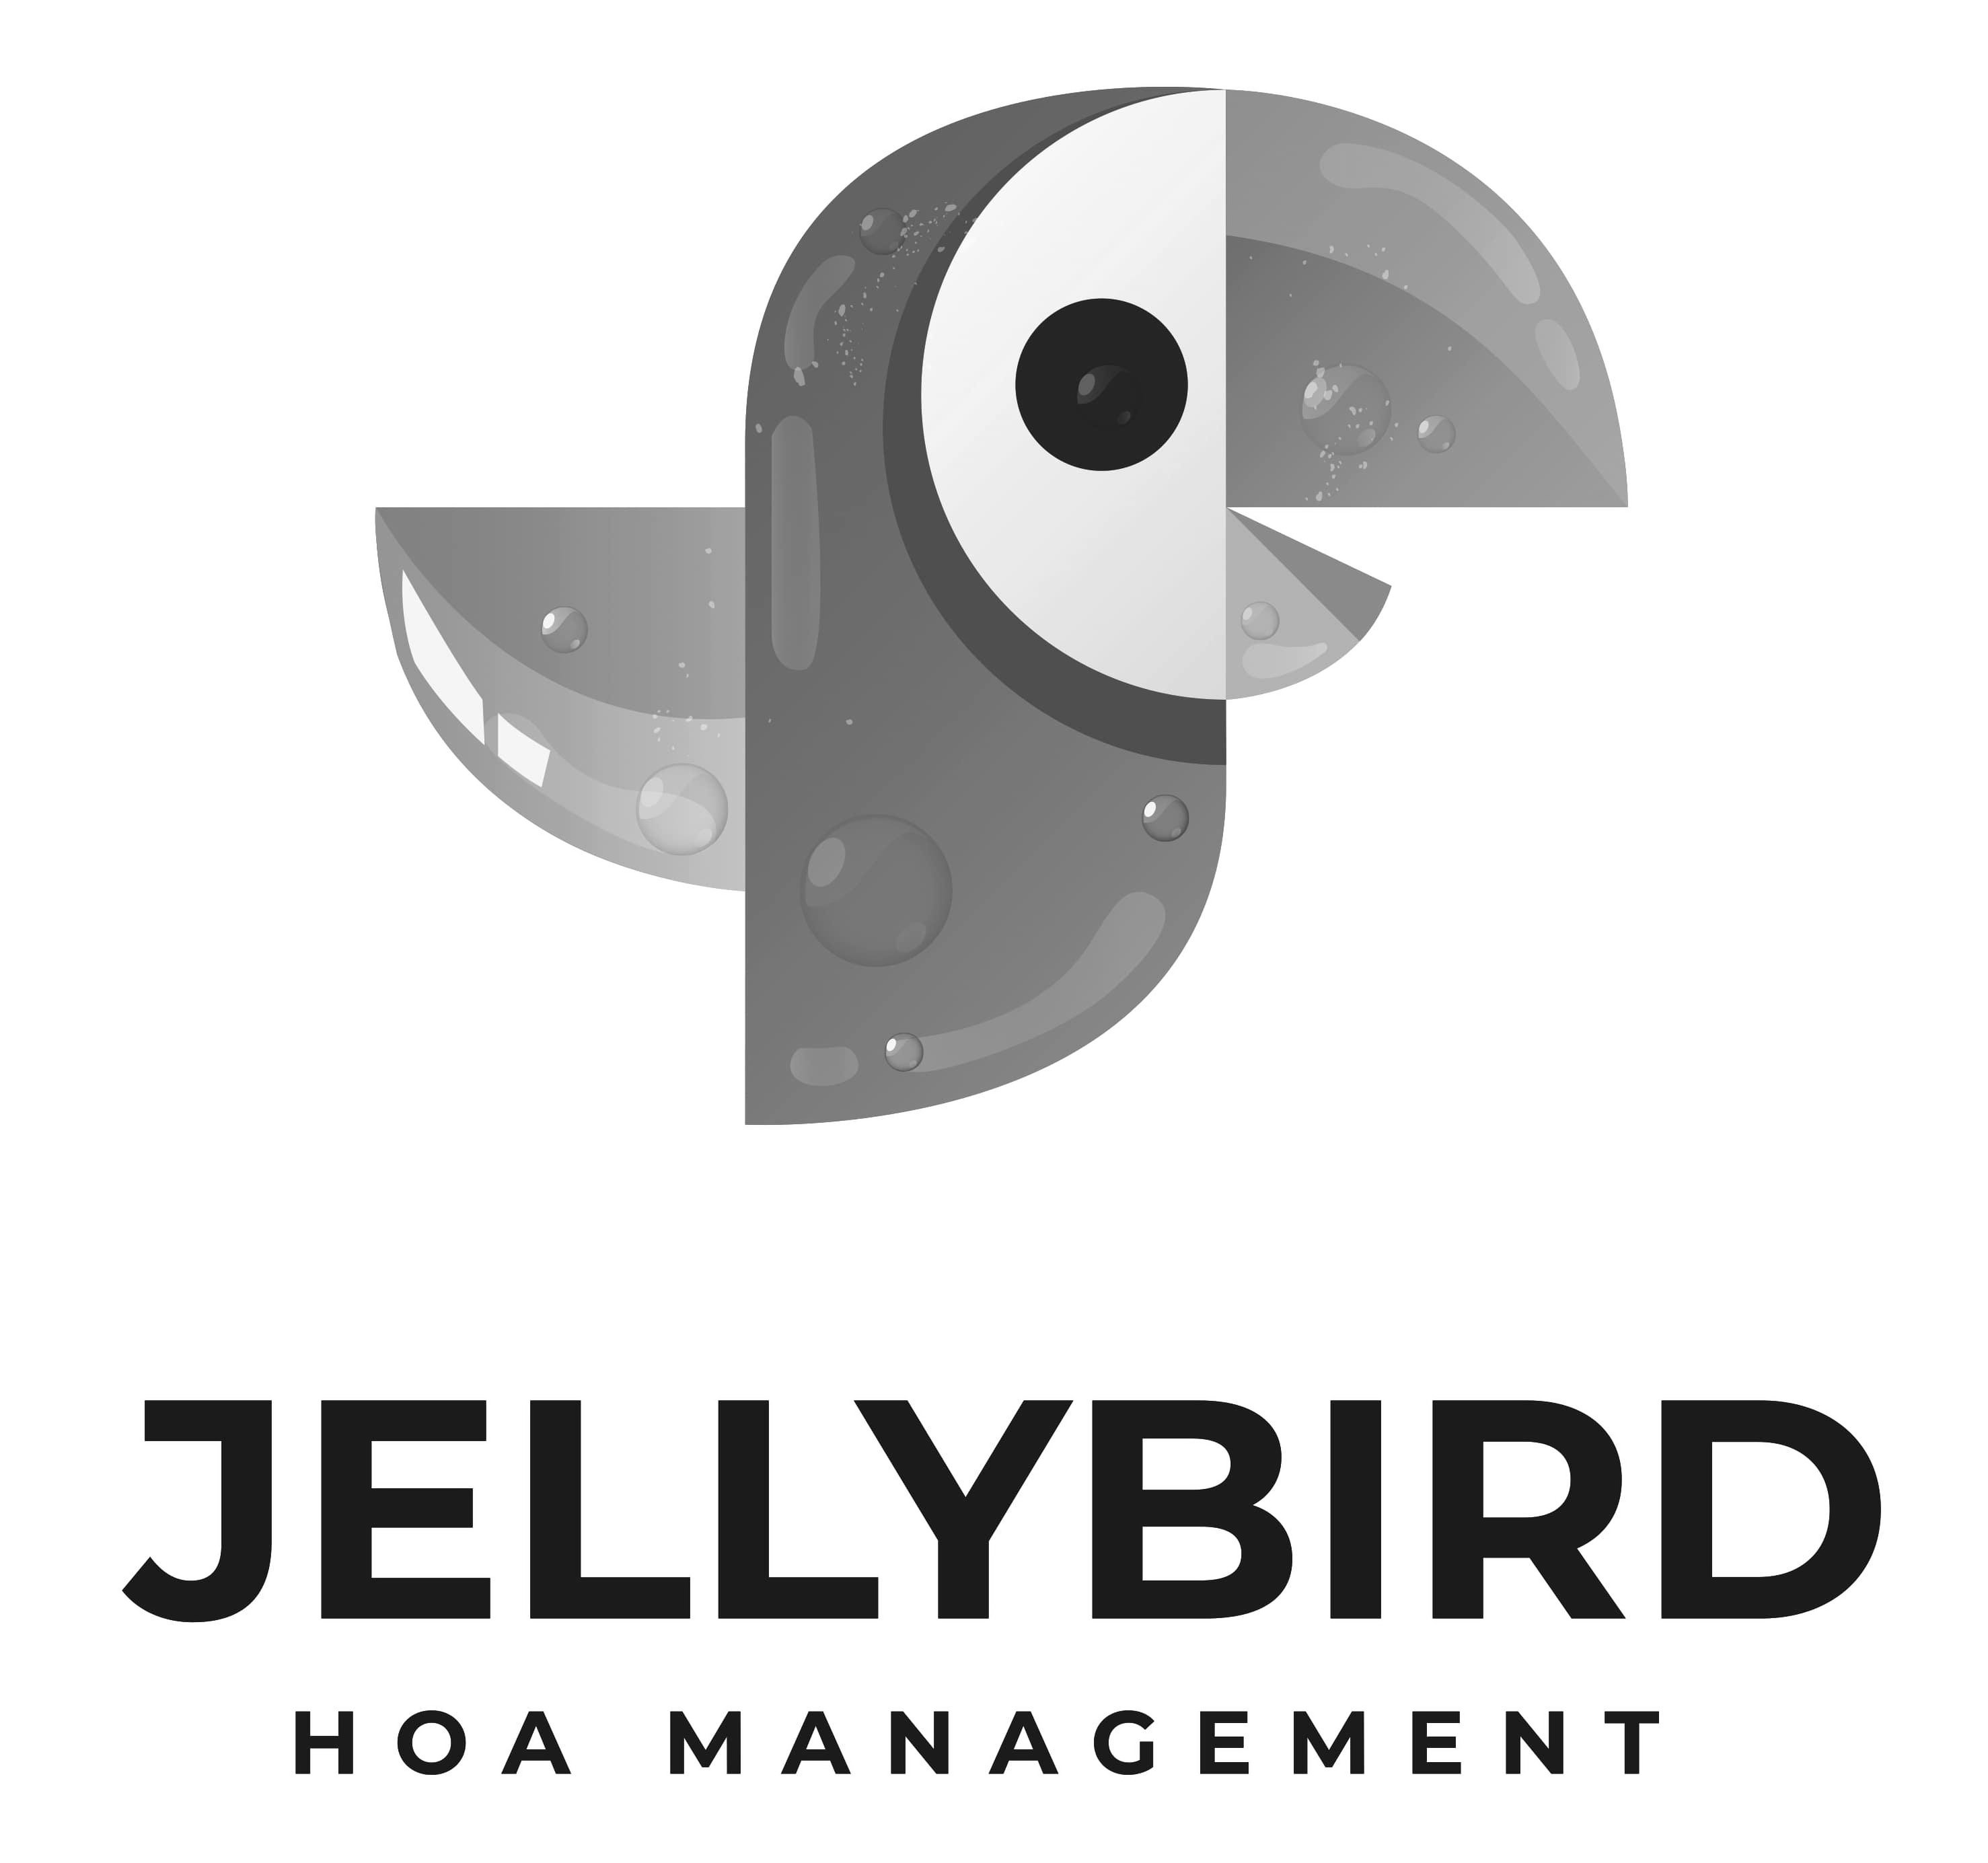  JELLYBIRD HOA MANAGEMENT